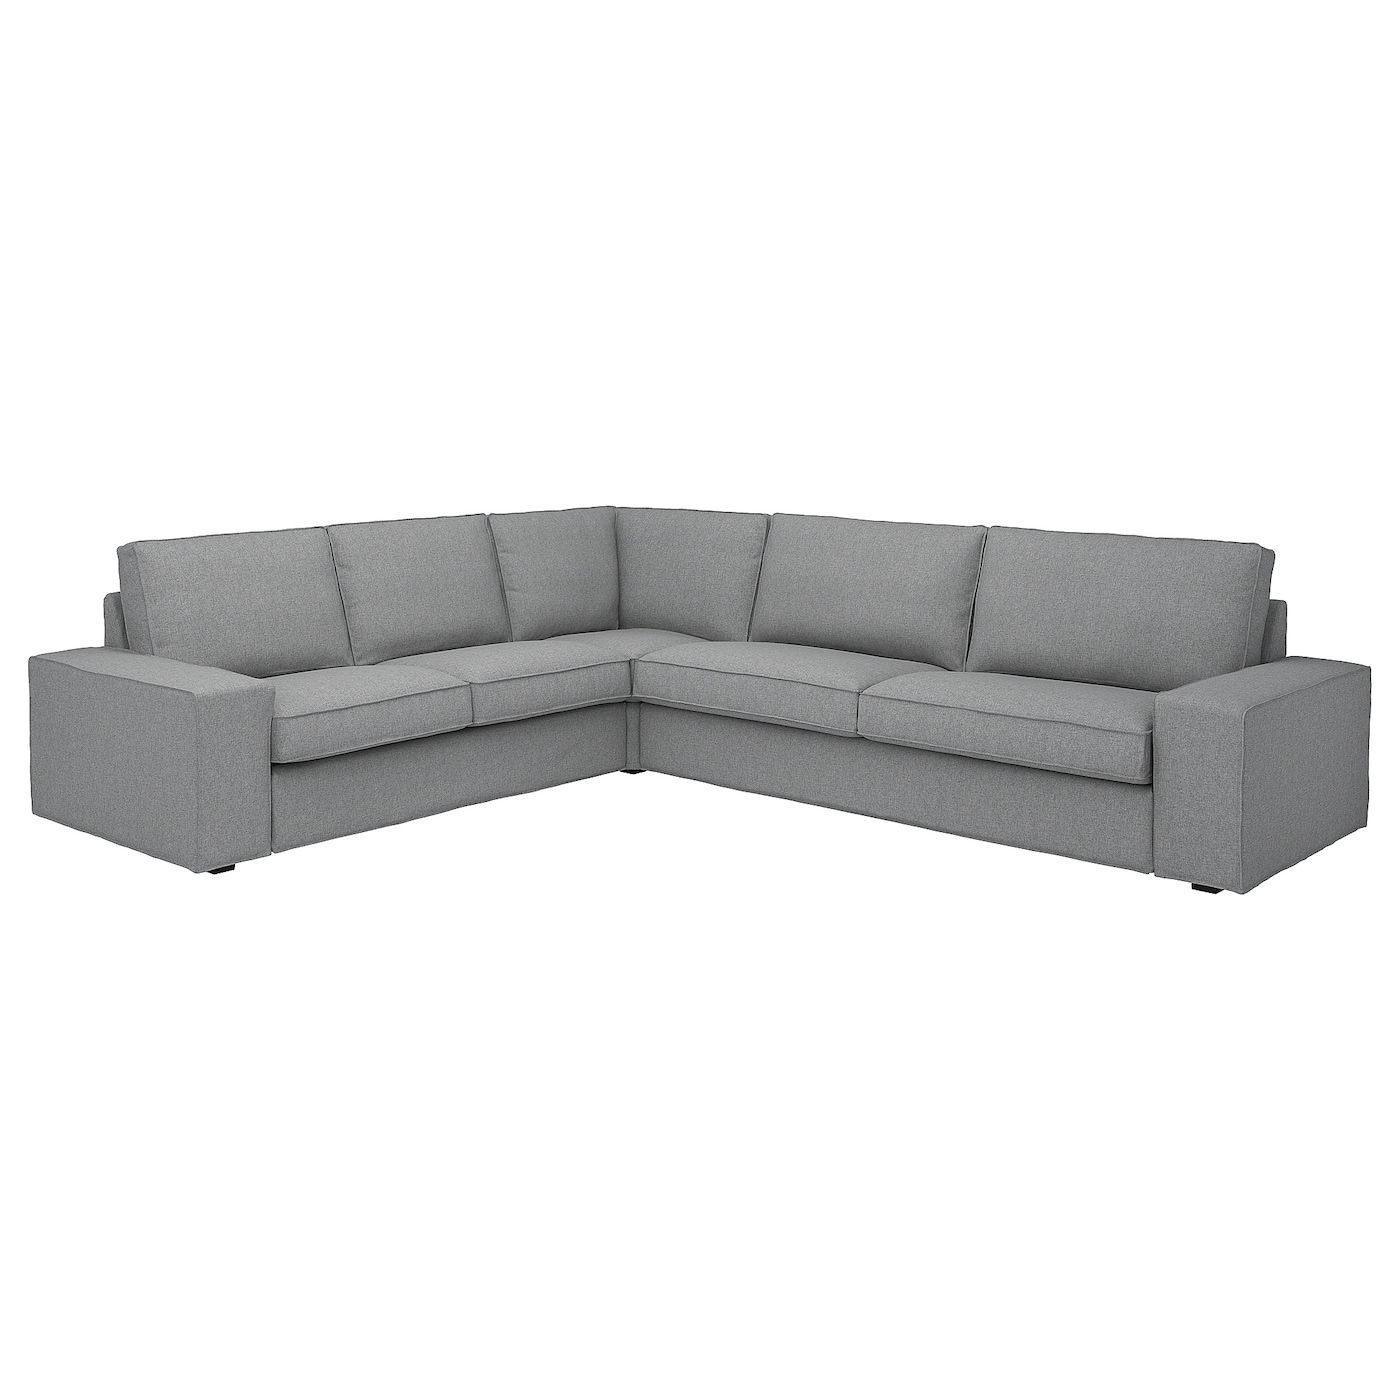 5-местный угловой диван - IKEA KIVIK, 83x95x257/297см, серый/светло-серый, КИВИК ИКЕА